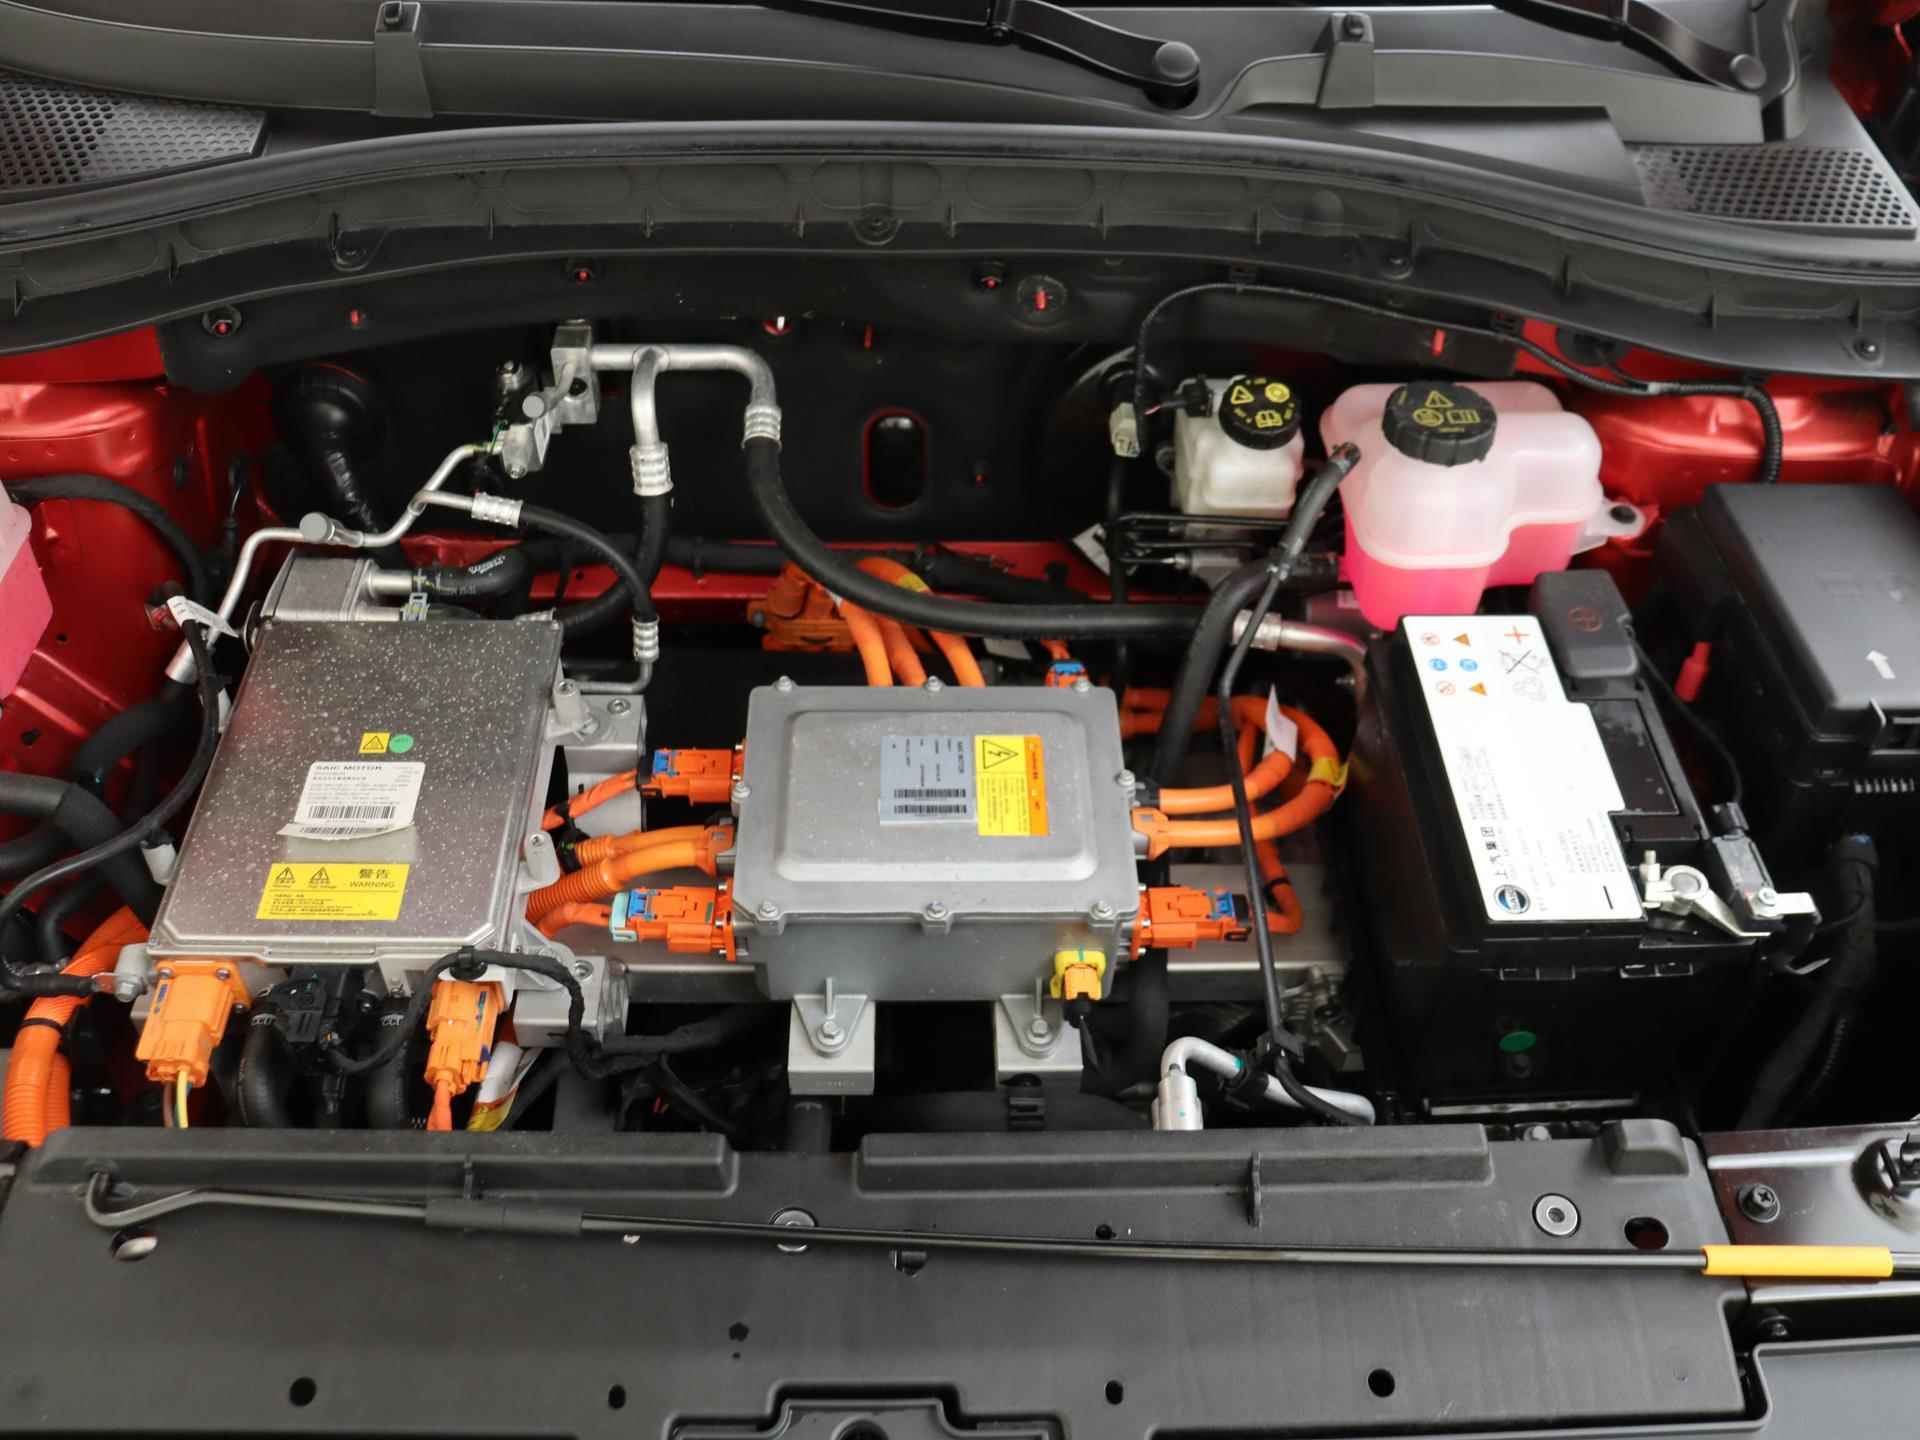 MG ZS EV Standard Range Luxury 50 kWh 320 KM WLTP | Panoramisch schuifkanteldak | 360 graden camera | Black Pack | Geblindeerde achterruiten | 19 inch Polished sportvelgen met Allseasonbanden - 12/30